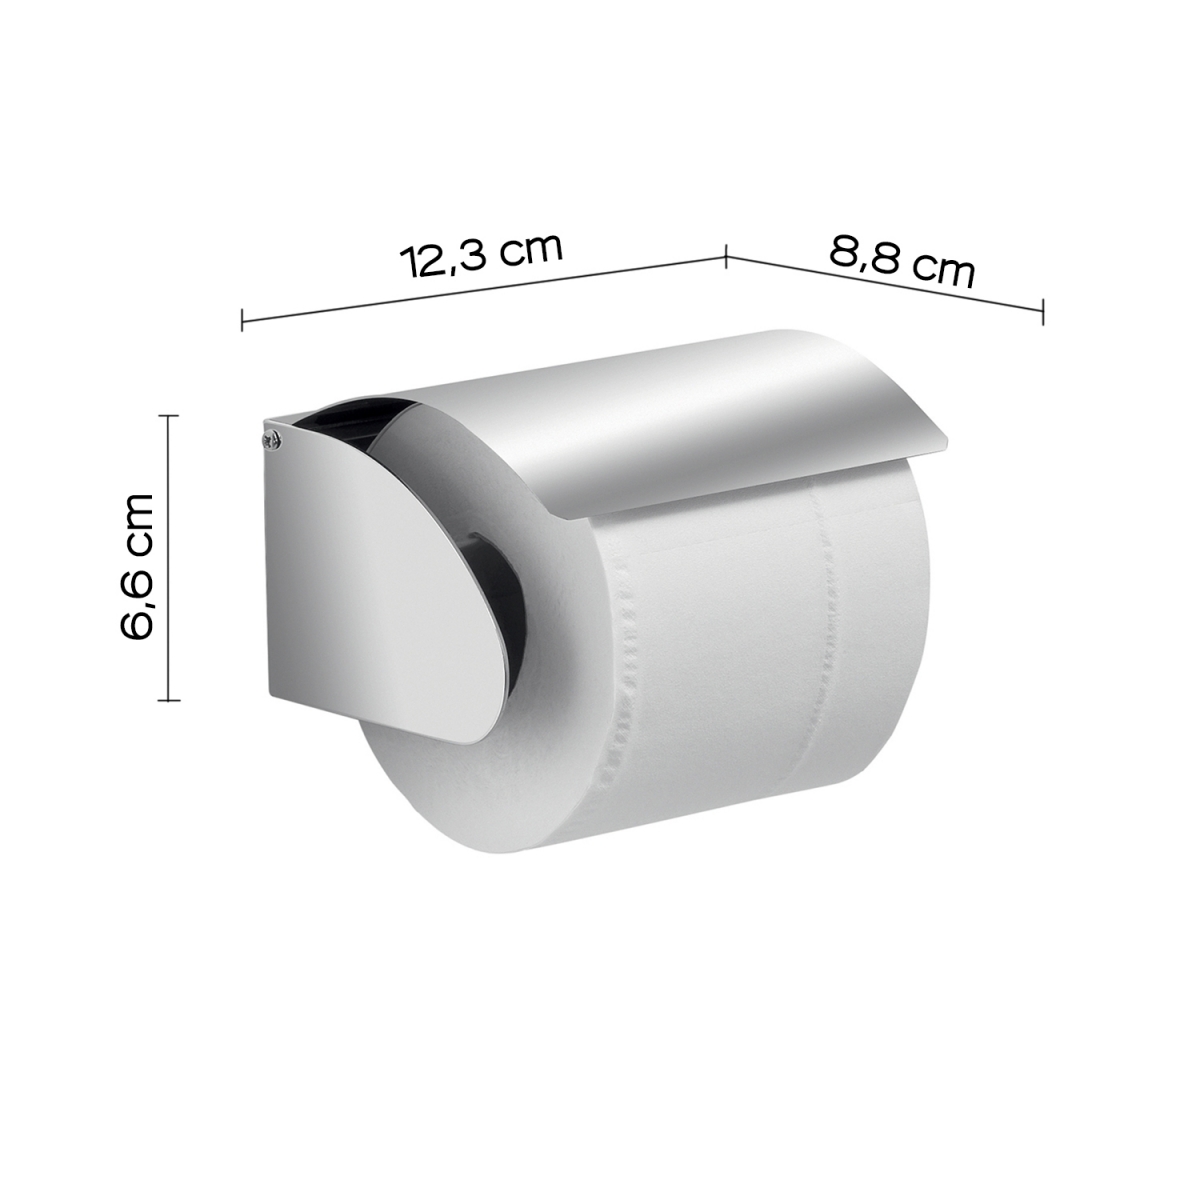 Detalhe de Suporte para rolo de papel higiénico com tampa Project Brushed Chrome